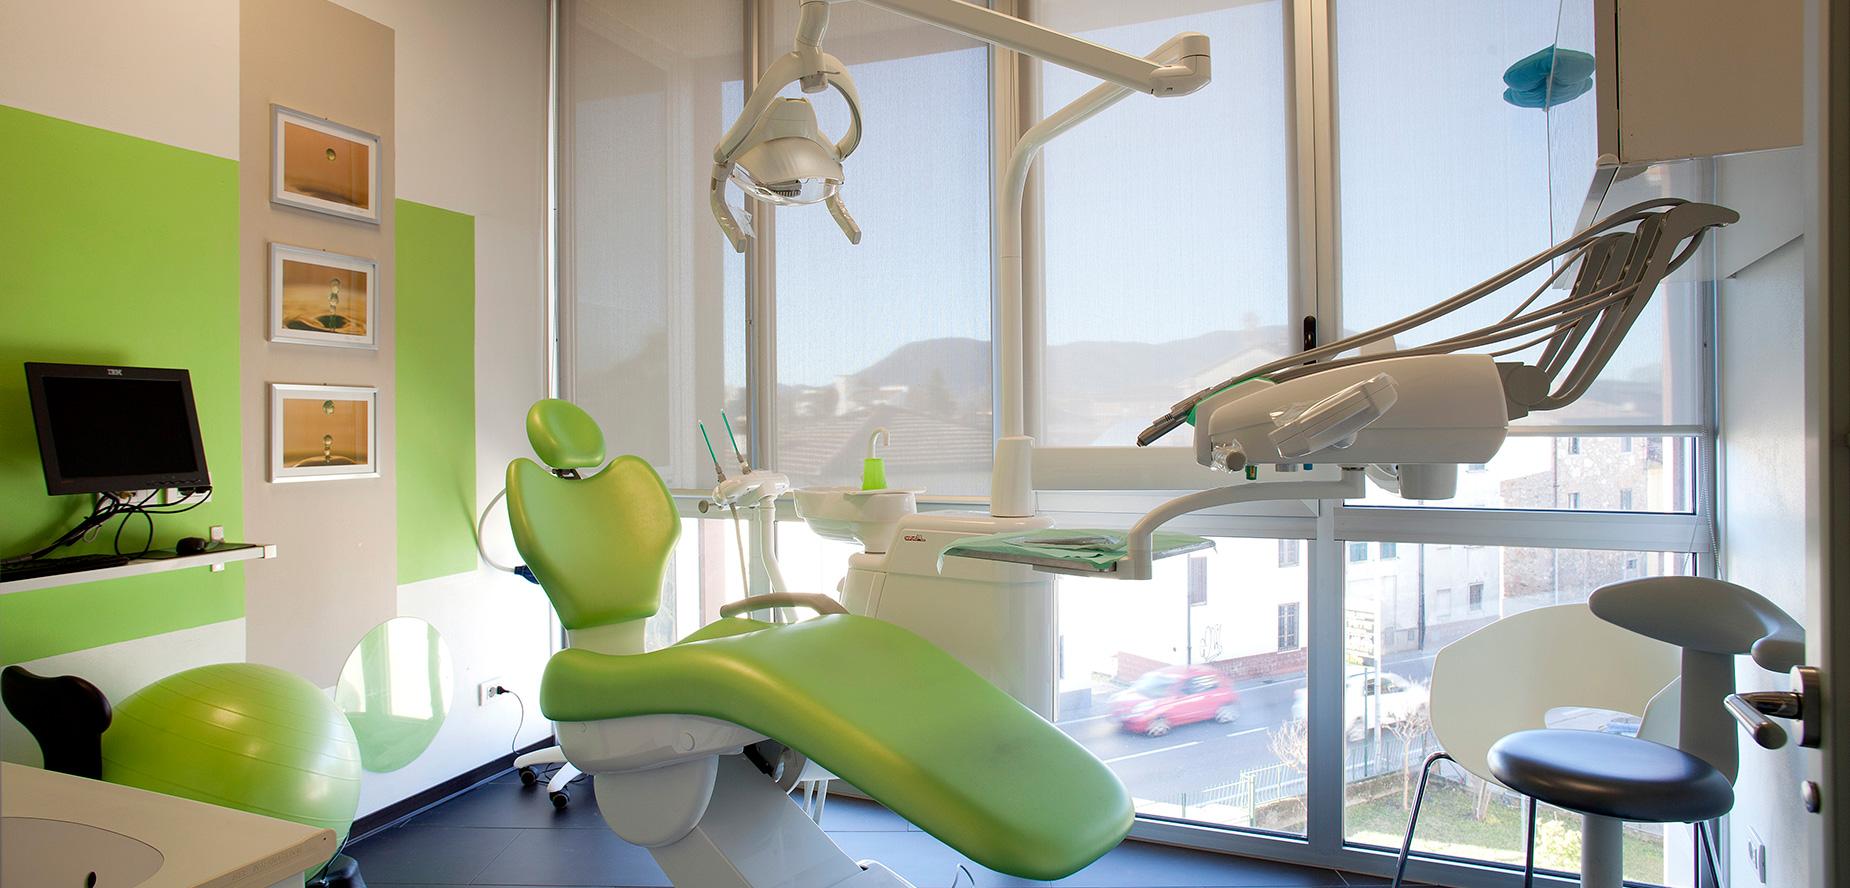 Gemignani Clinica Dentale Lucca, sala verde